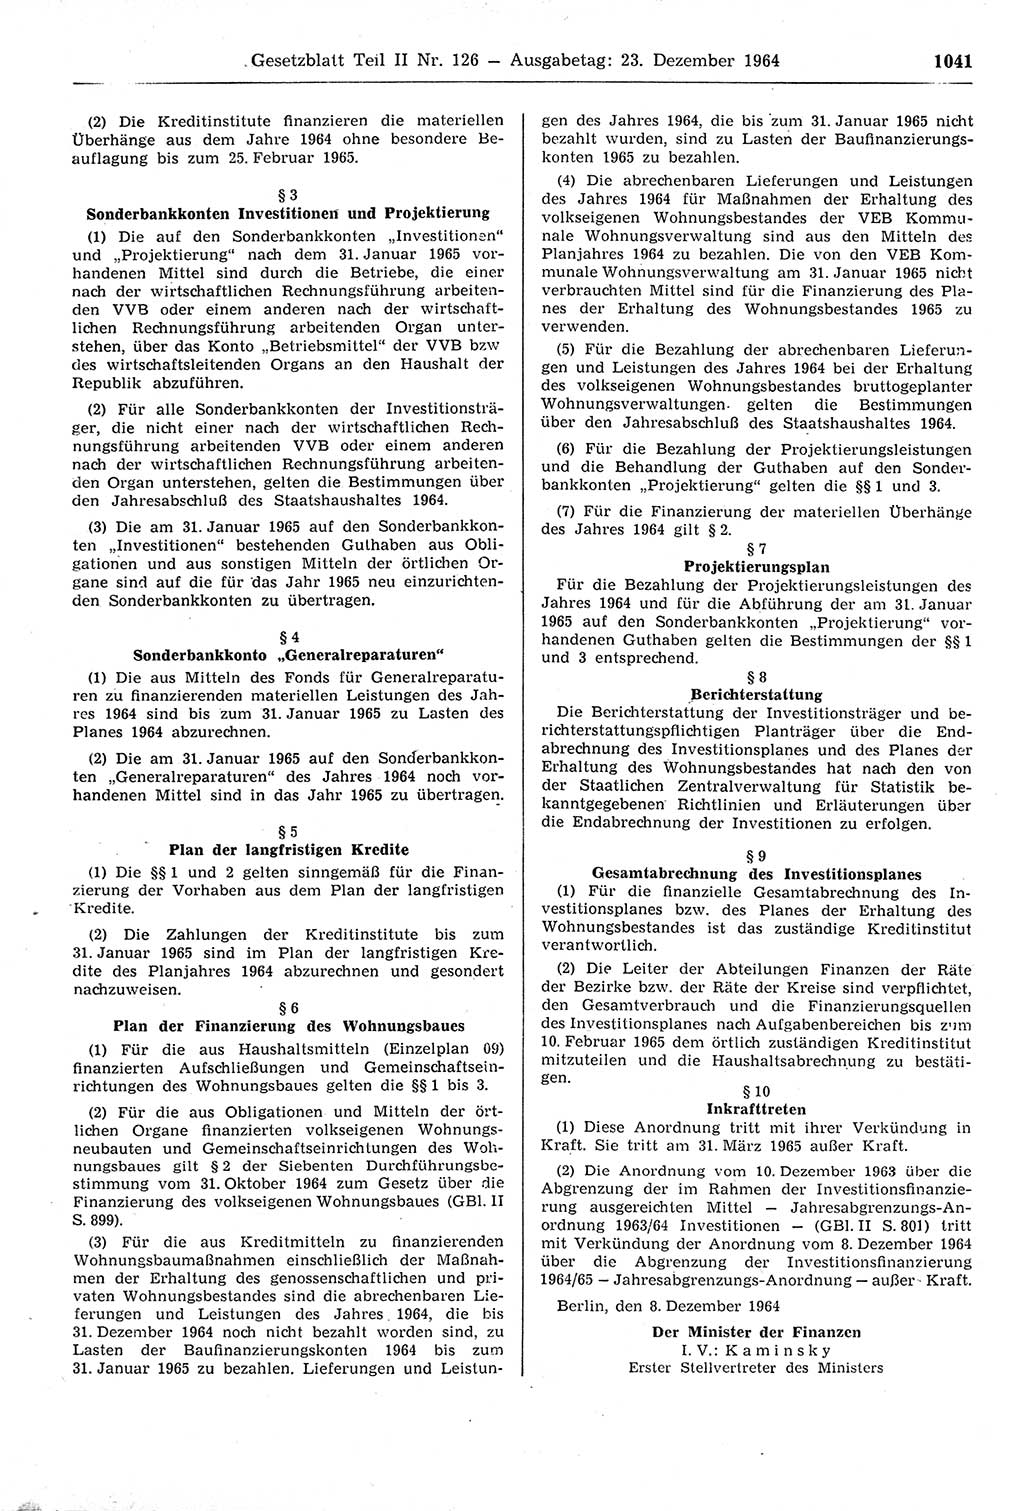 Gesetzblatt (GBl.) der Deutschen Demokratischen Republik (DDR) Teil ⅠⅠ 1964, Seite 1041 (GBl. DDR ⅠⅠ 1964, S. 1041)